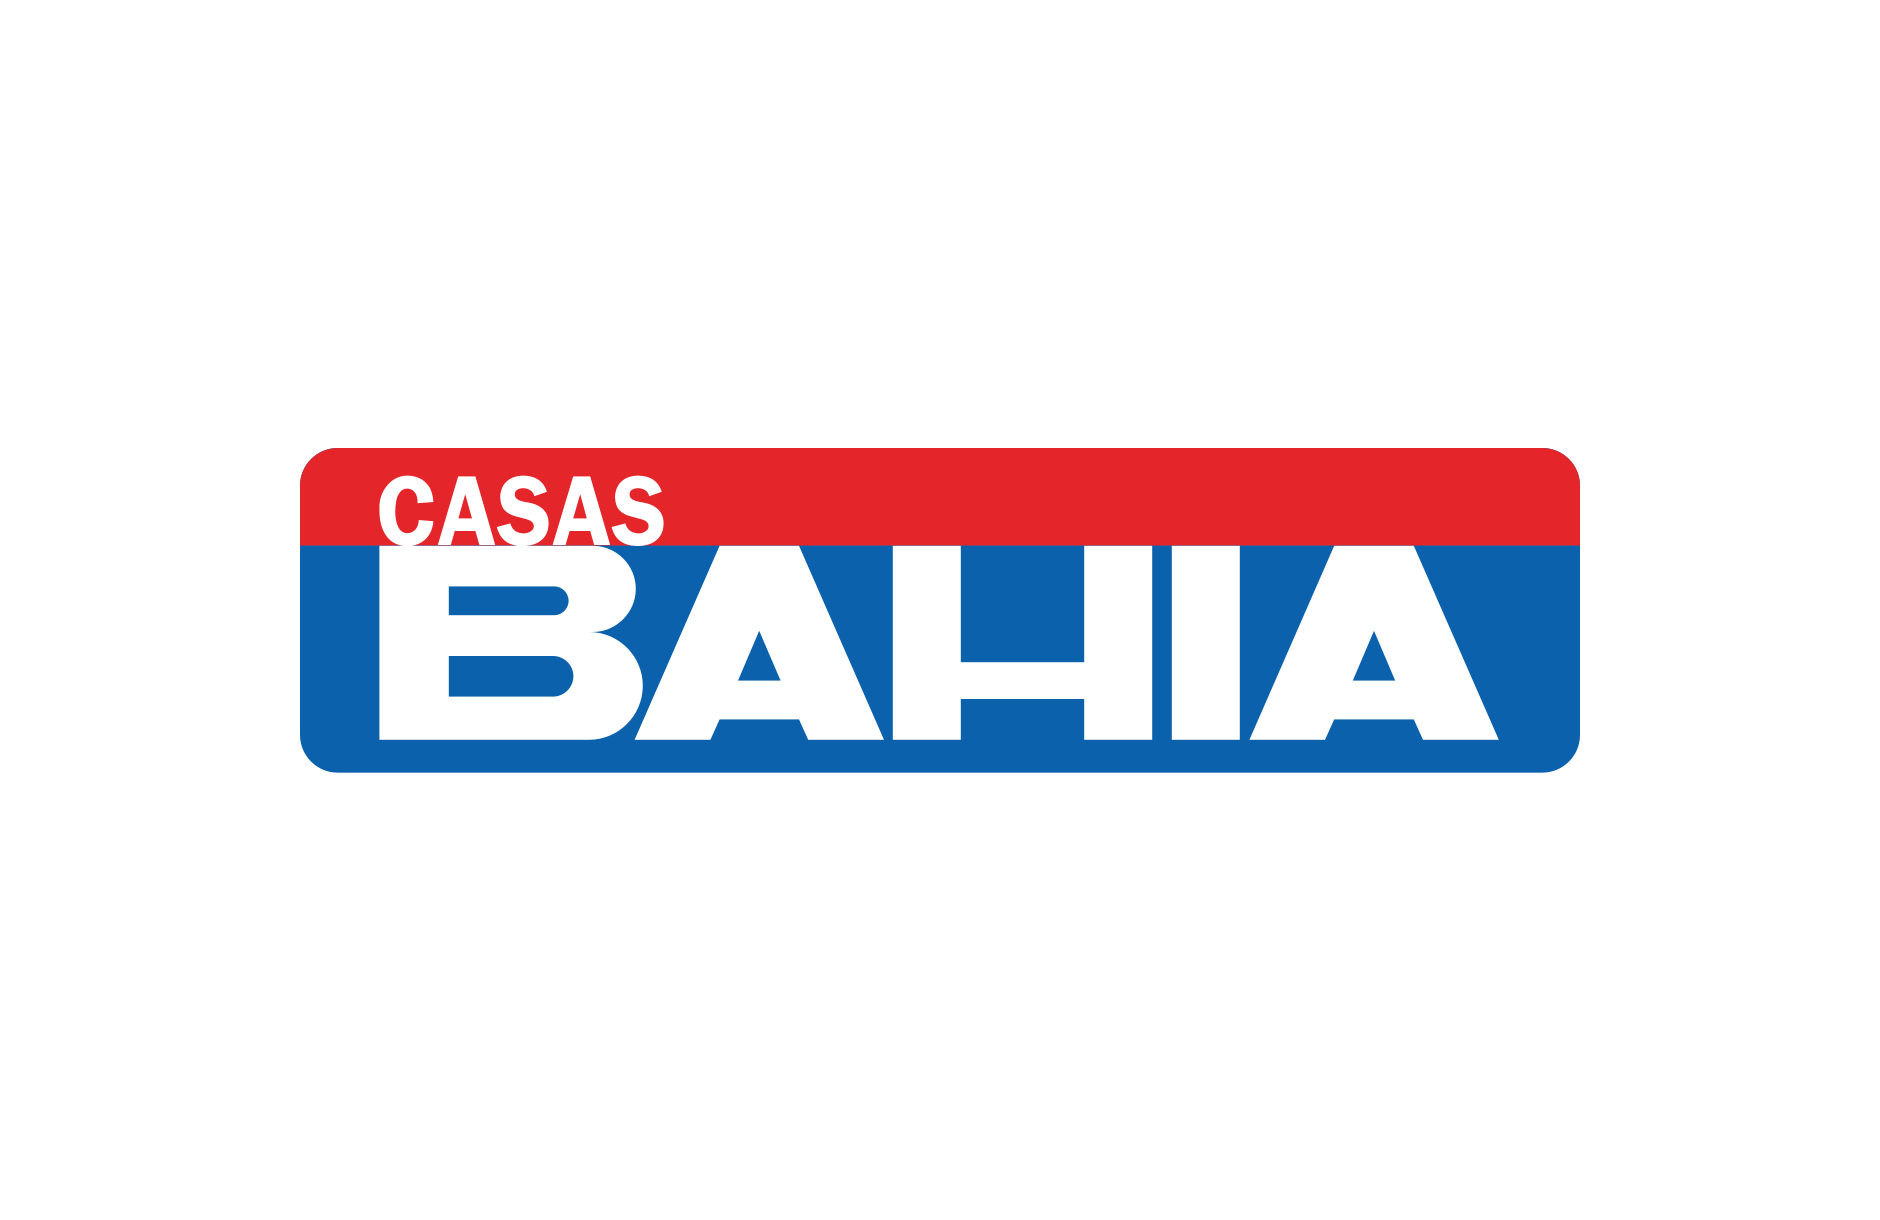 Características do cartão das Casas Bahia